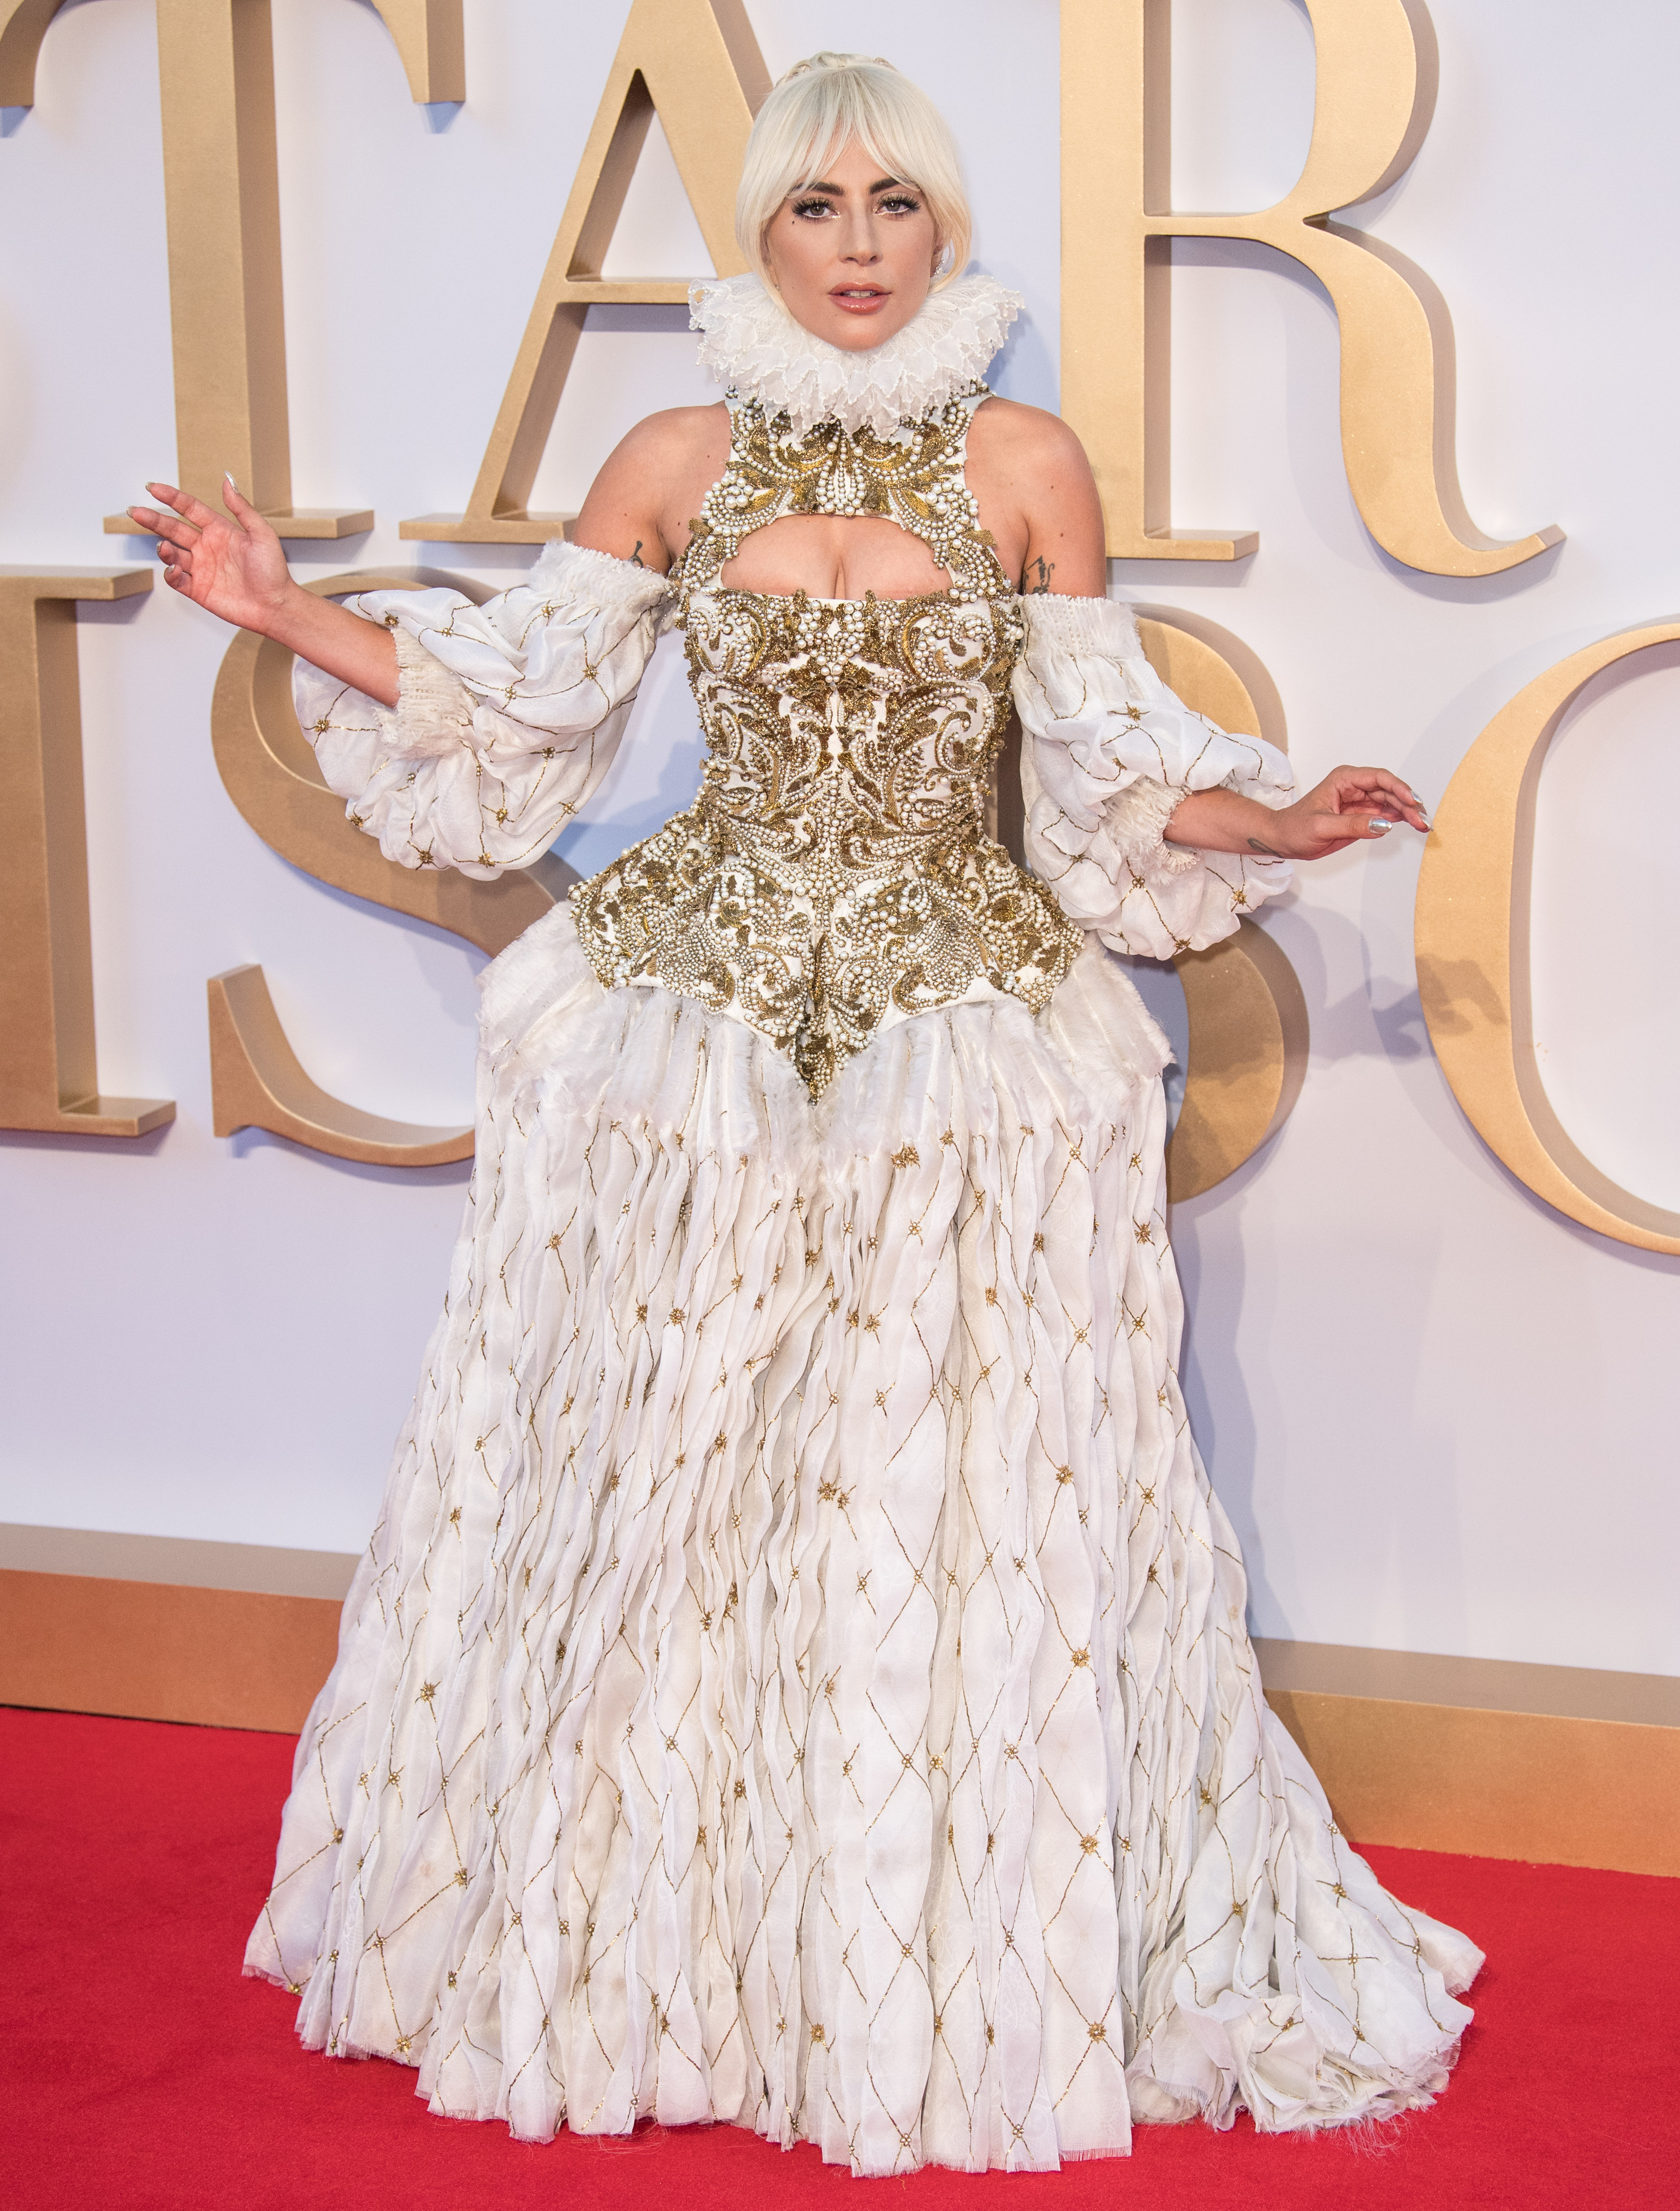 Grammys 2019: Lady Gaga Red Carpet Dress Photos